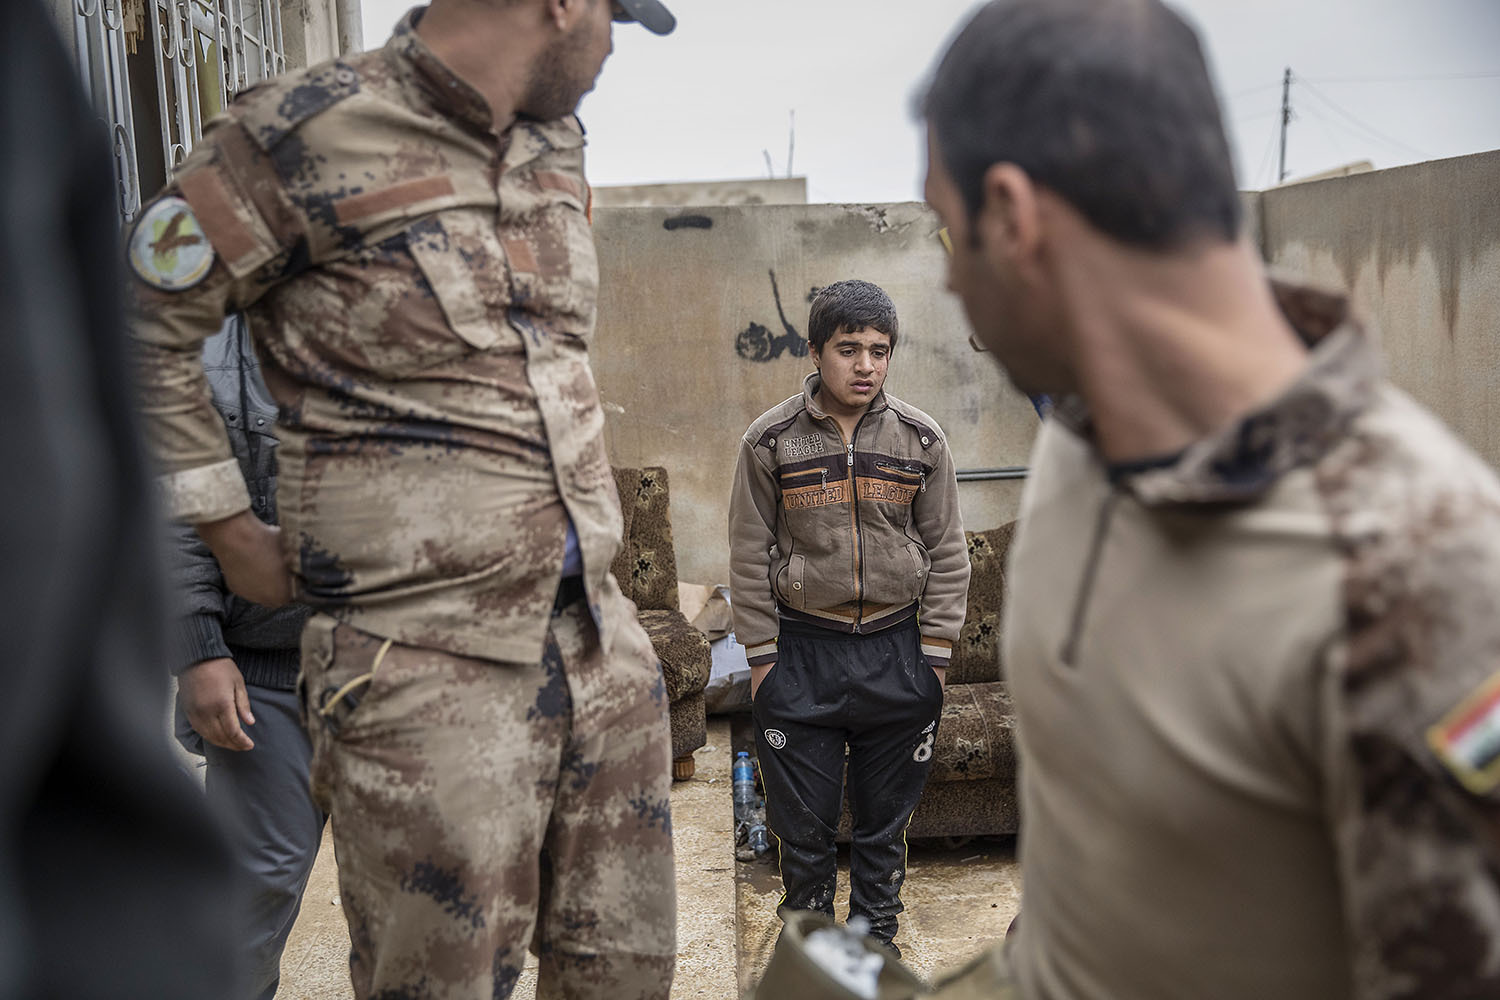 foto : magnus wennman : en man i 40års åldern som blivit skjuten i buken kommer in på kliniken. hans två söner inser snart att han avlidit. fältsjukhuset vid irakiska frontlinjen i mosul. hit kommer skadade och dödade civila och militärer från striderna i mosul. de som inte avlider får akut sjukvård och körs vidare till sjukhuset i erbil.